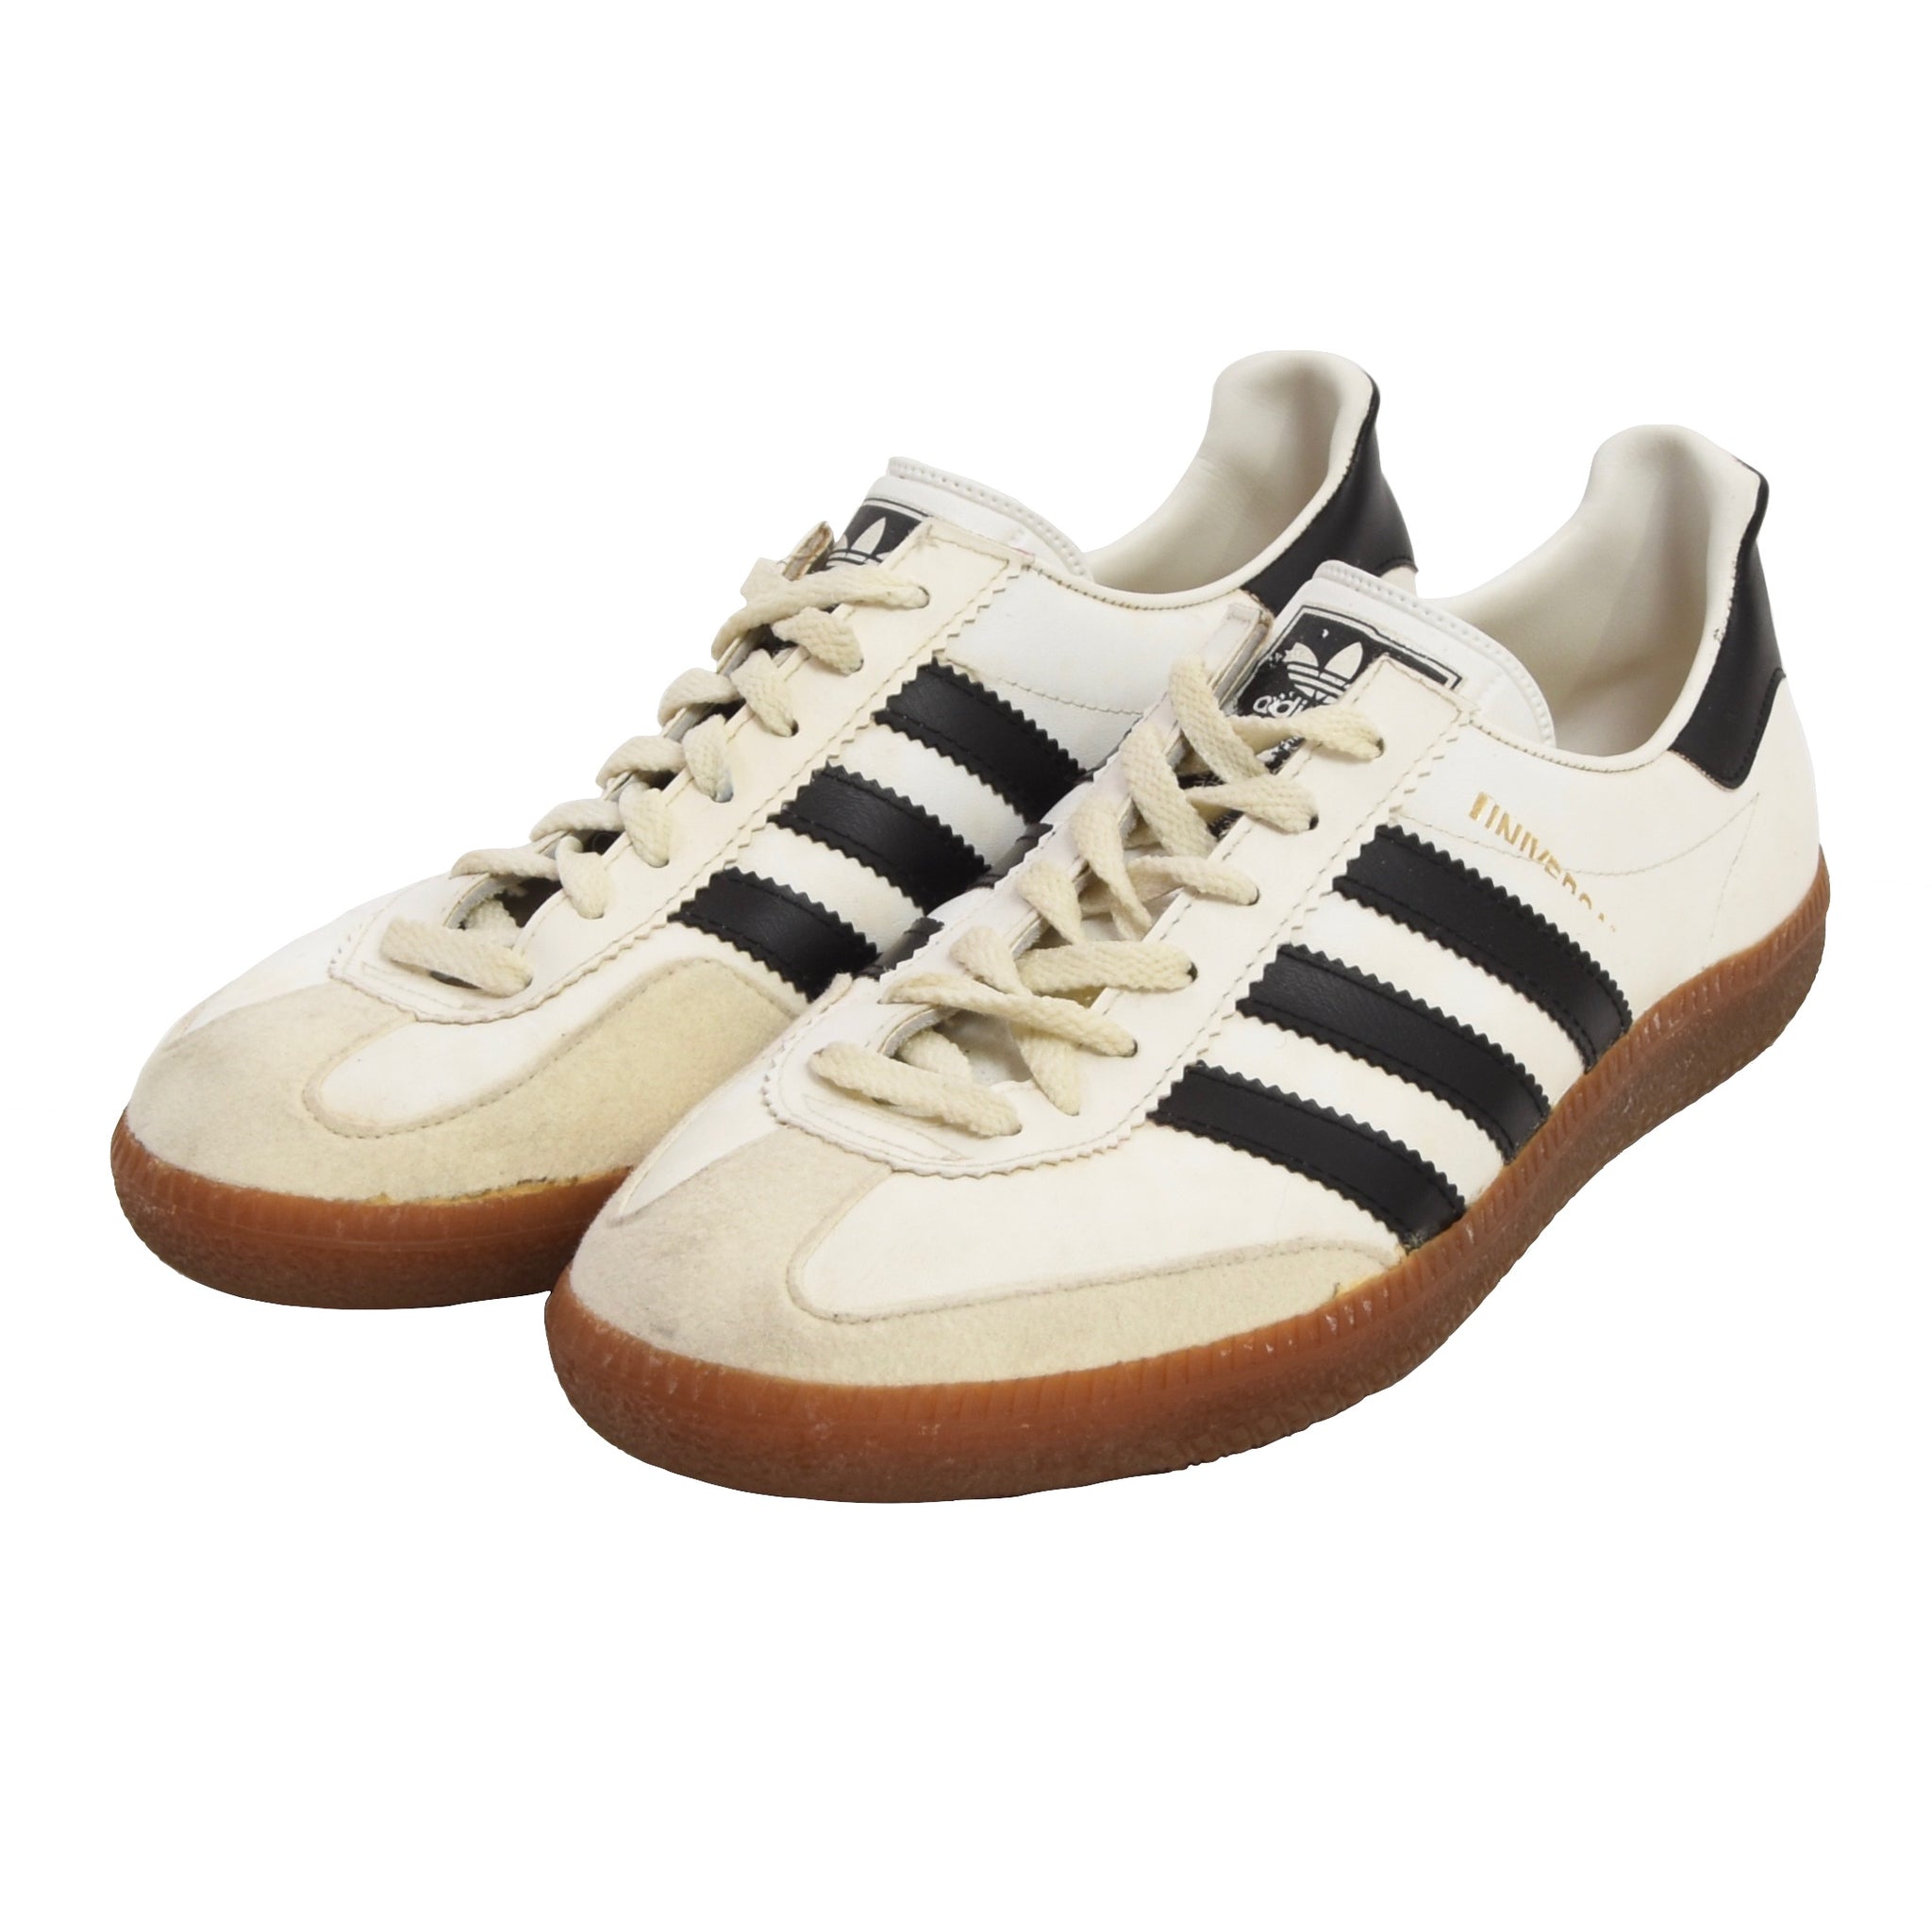 Afstudeeralbum Geavanceerd meten Vintage Adidas Universal Sneakers Made in West Germany Größe 6,5 - wei –  Leot James